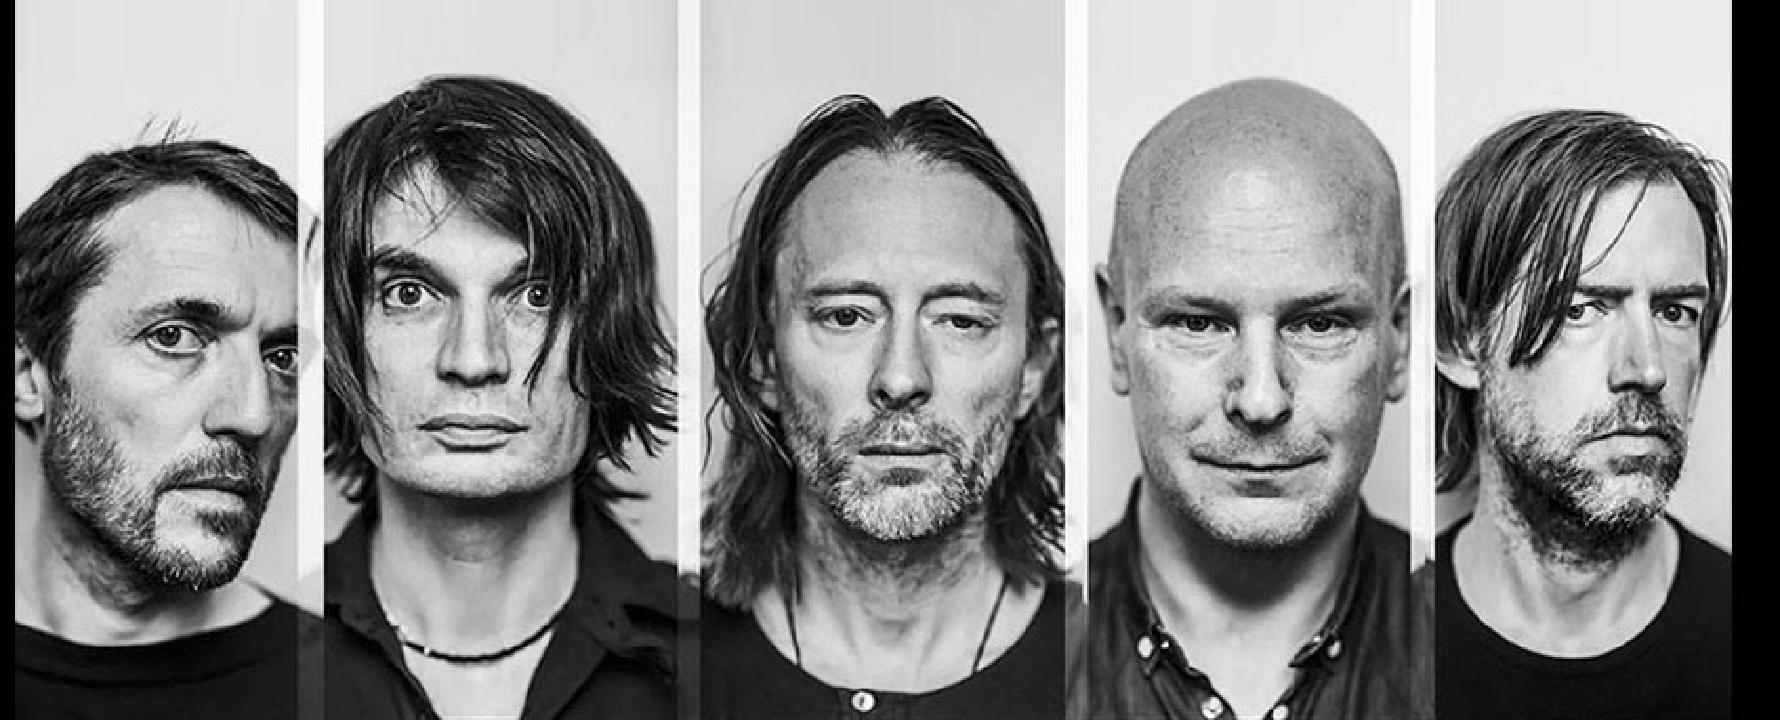 Fotografía promocional de Radiohead